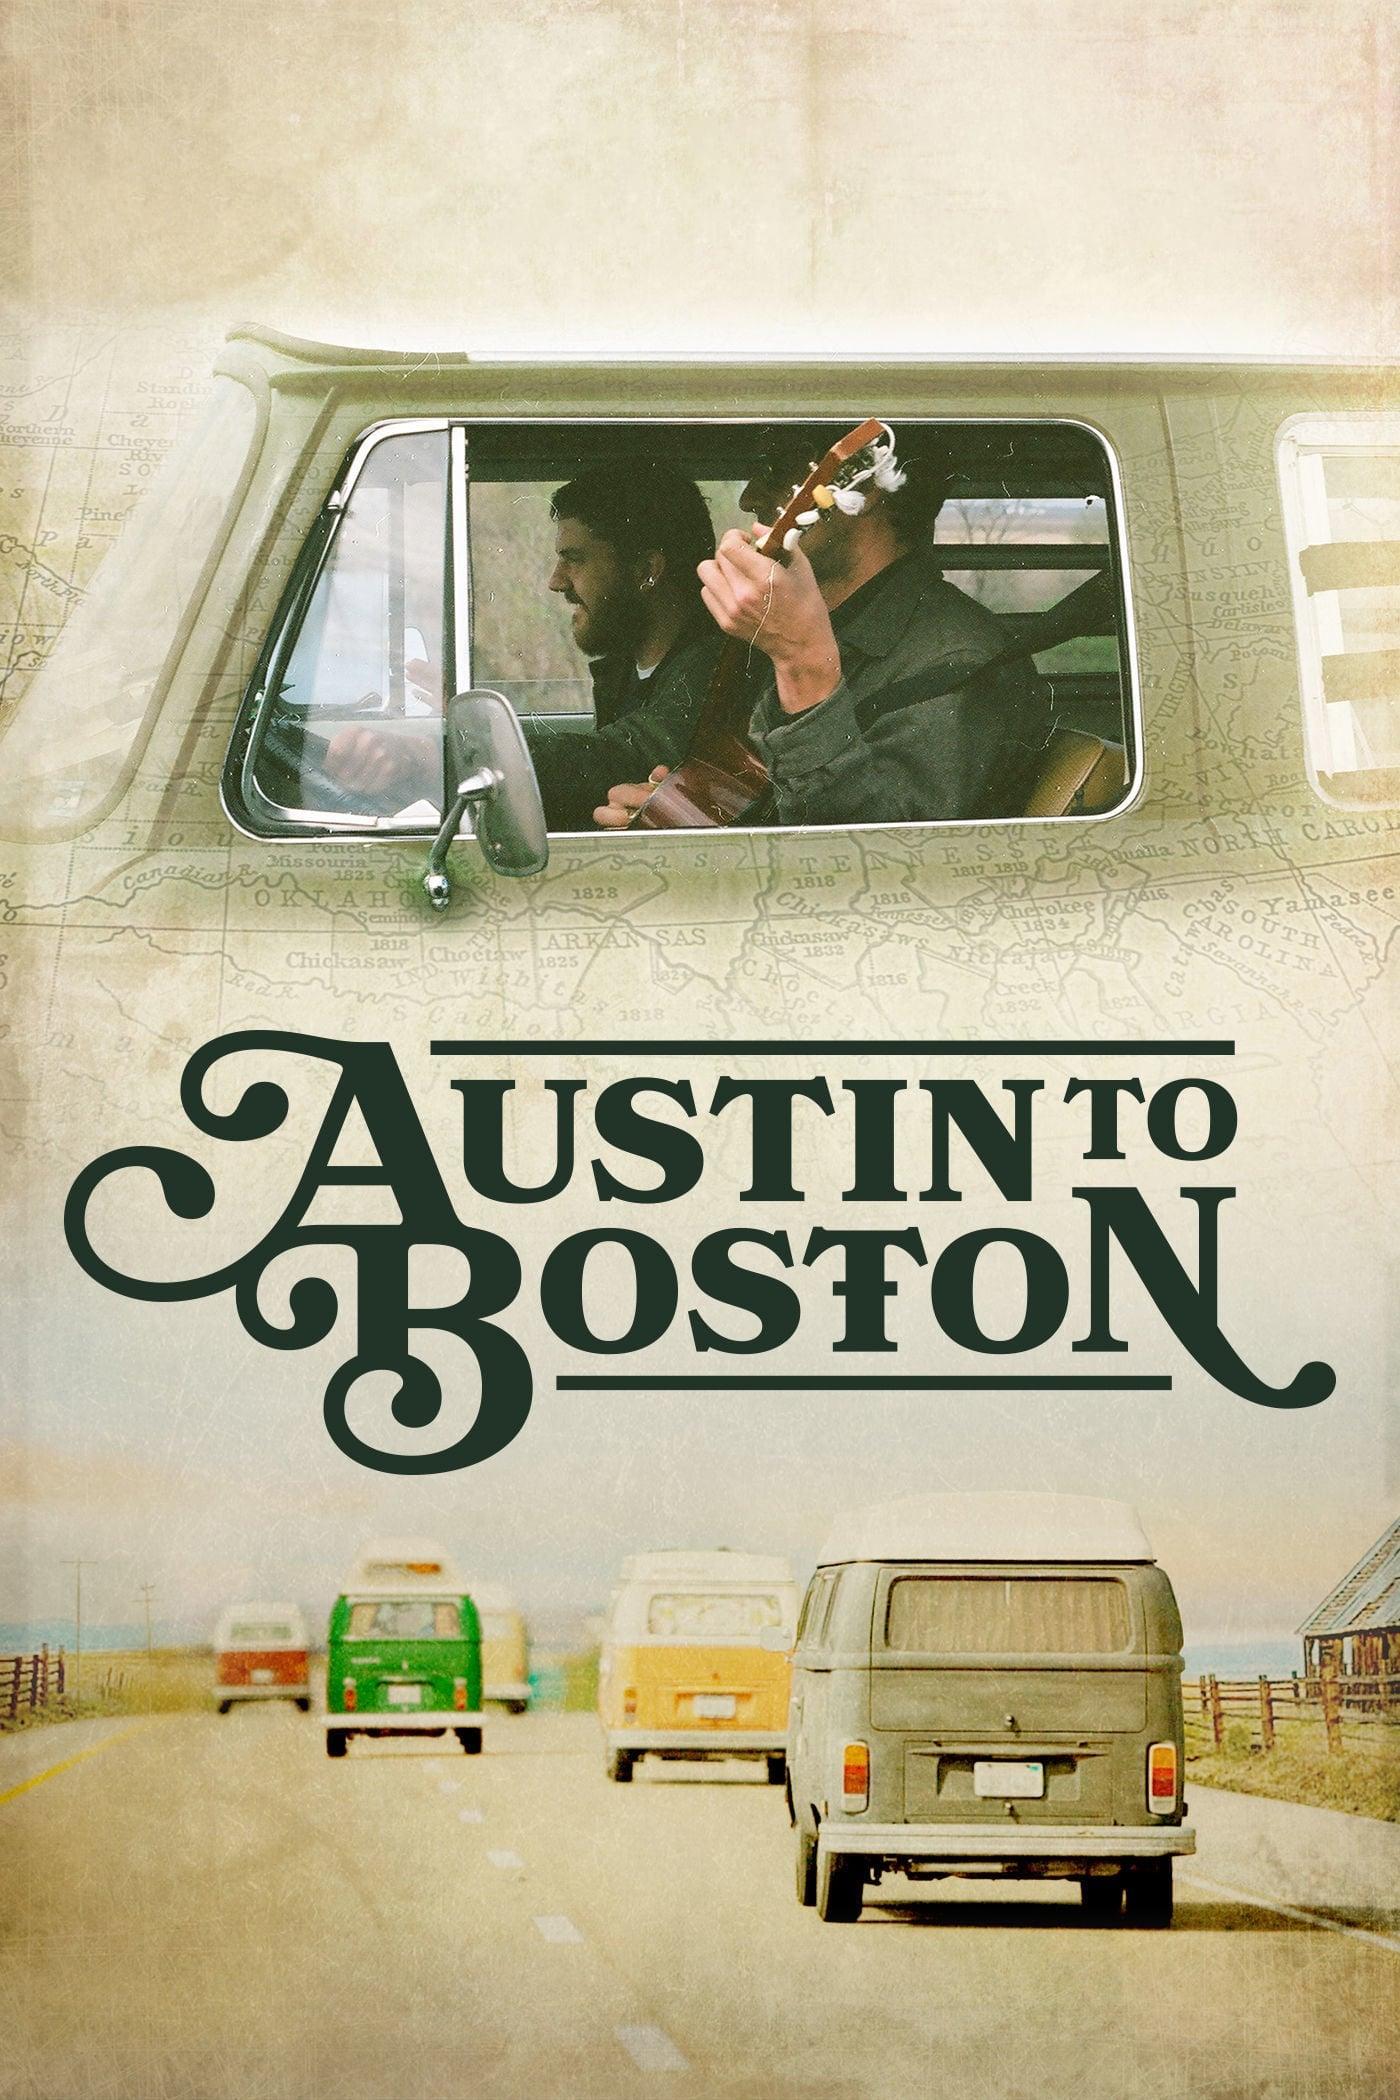 Austin to Boston poster